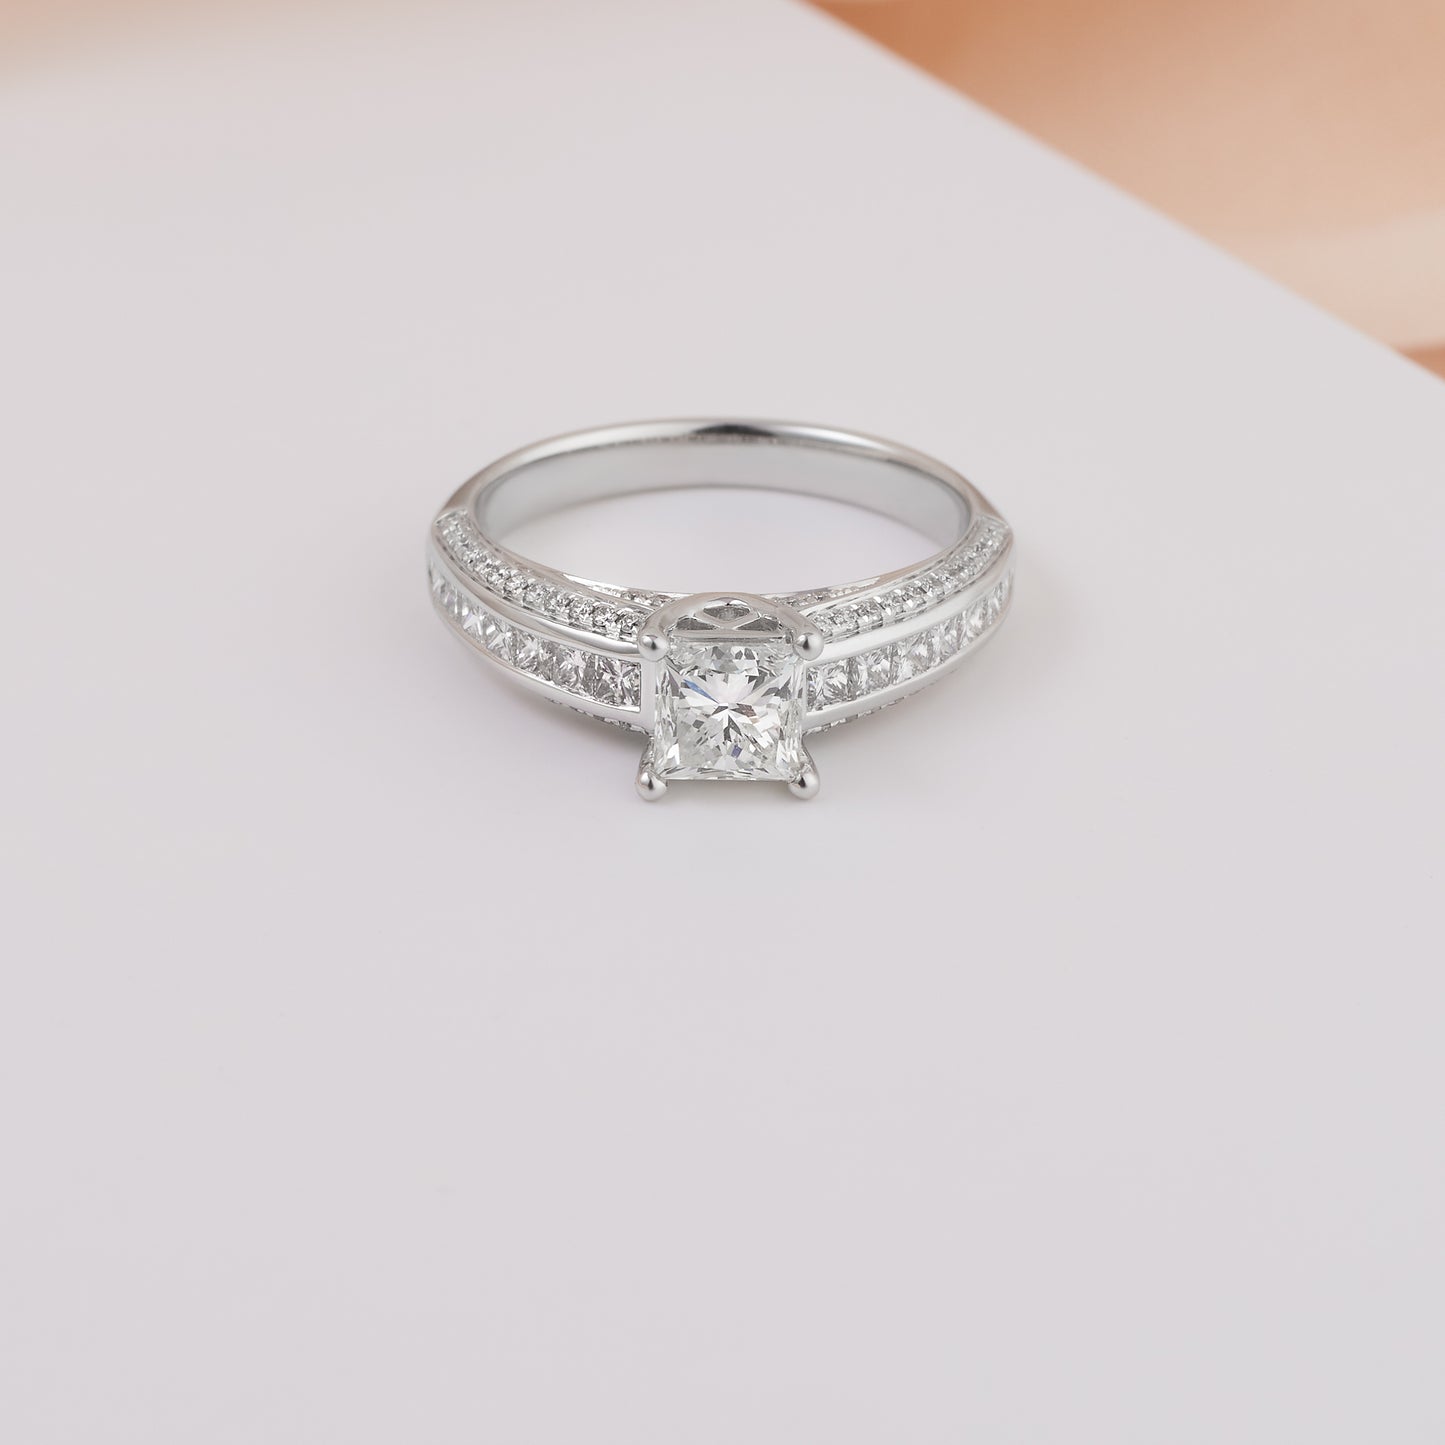 18K White Gold Princess Cut Diamond Engagement Ring 1.75tdw